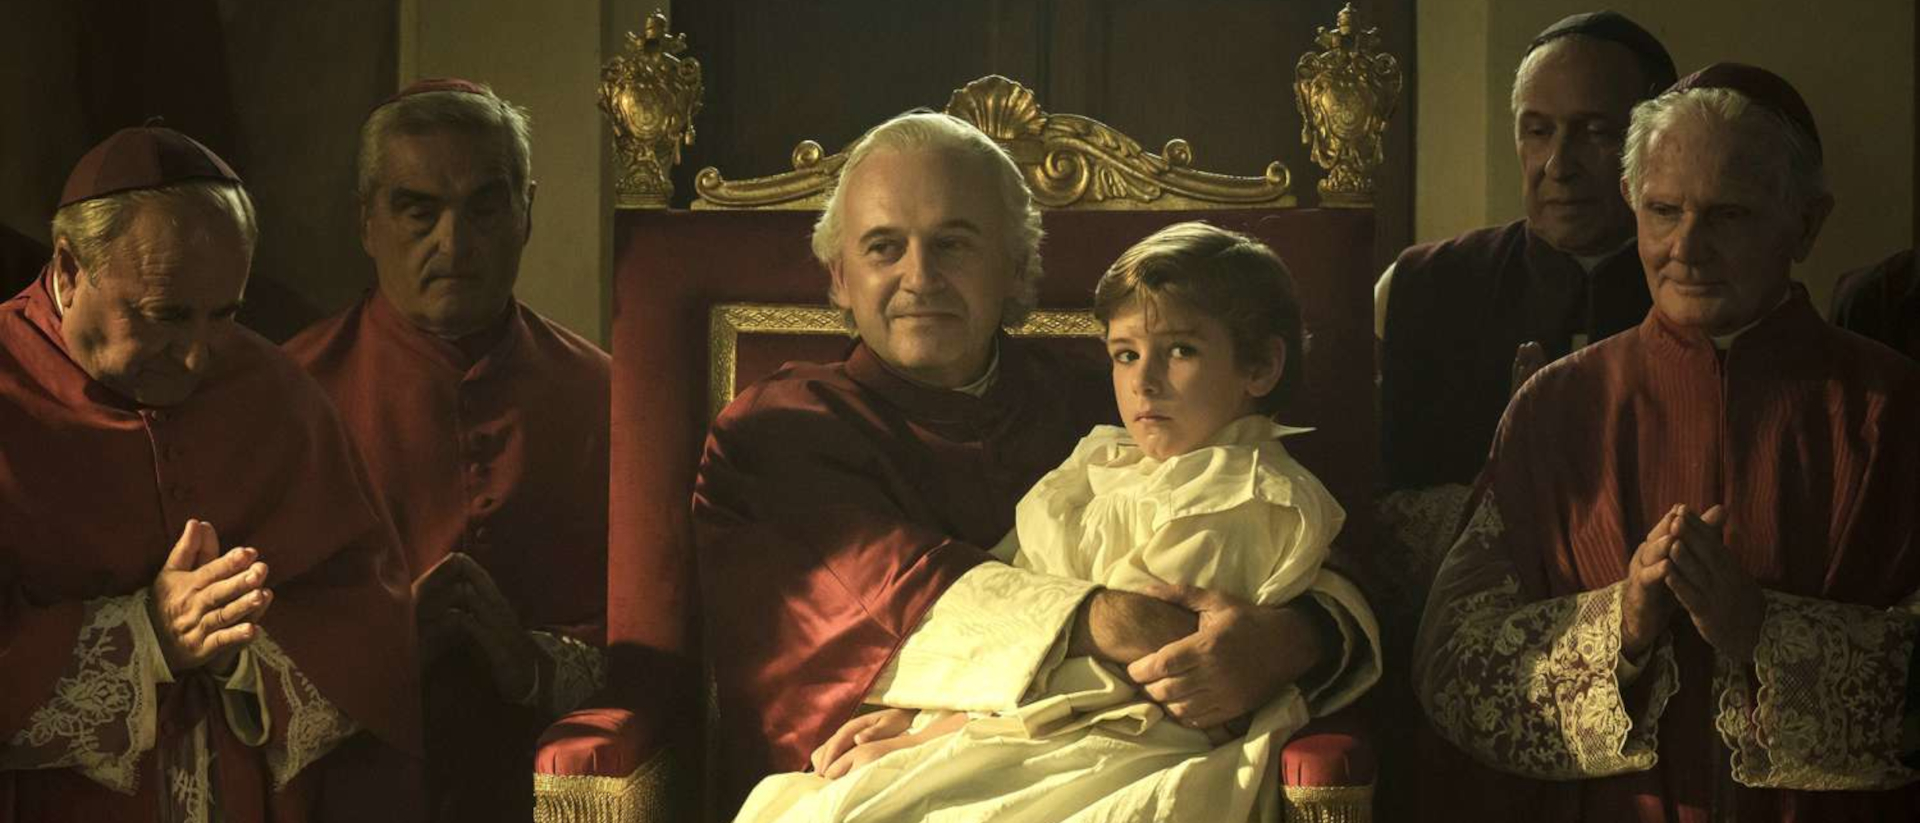 Papst Pius IX. stellt den Jungen unter seinen persönlichen Schutz und weigert sich, ihn seiner Familie zurückzugeben.